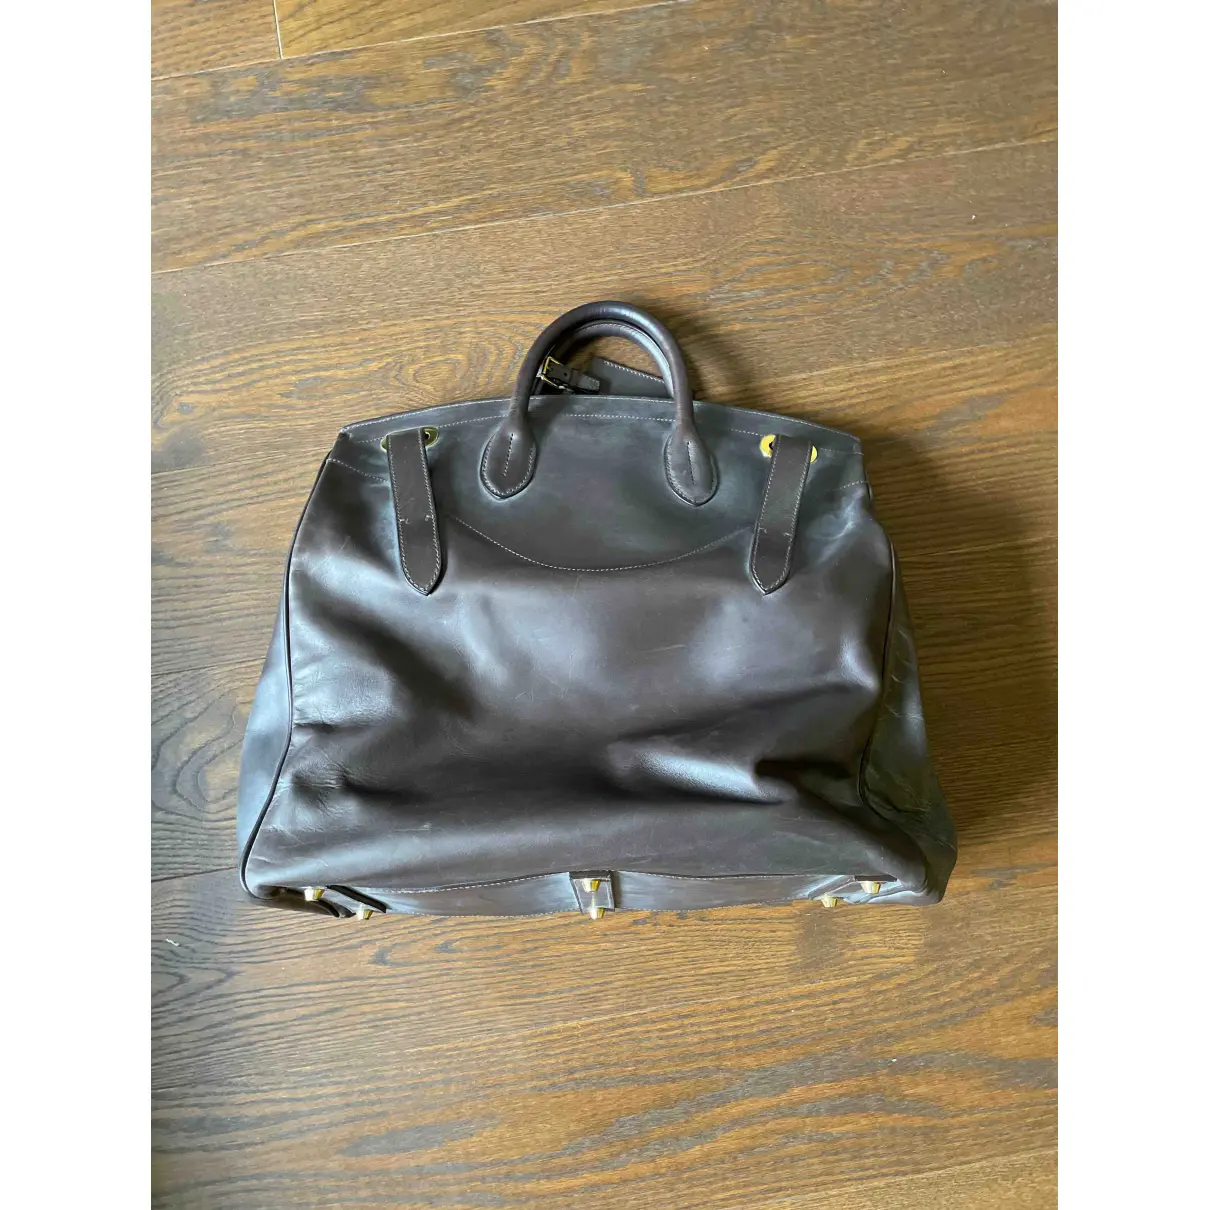 Classique  leather travel bag Ralph Lauren Collection